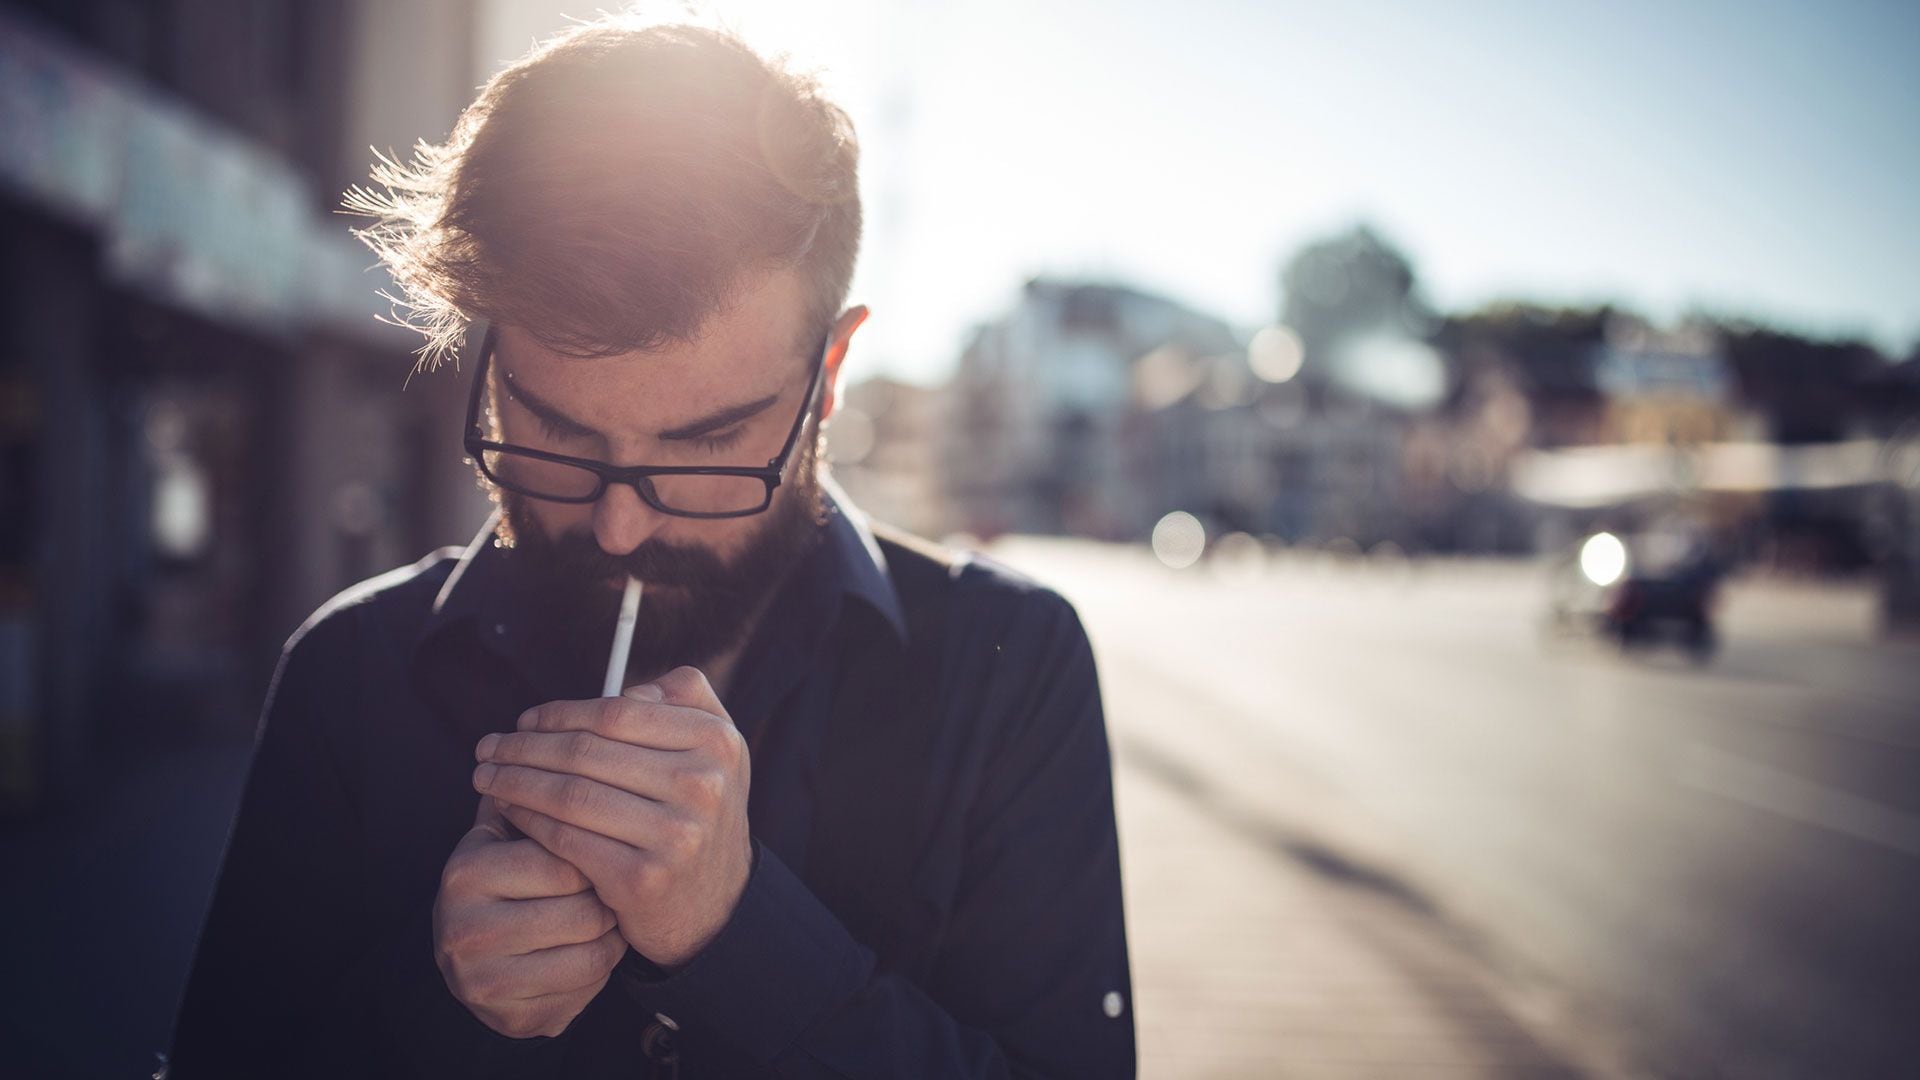 Una explicación de los hallazgos del estudio podría ser que fumar causa inflamación en el cerebro, lo que a largo plazo puede provocar diversos trastornos mentales (Getty)